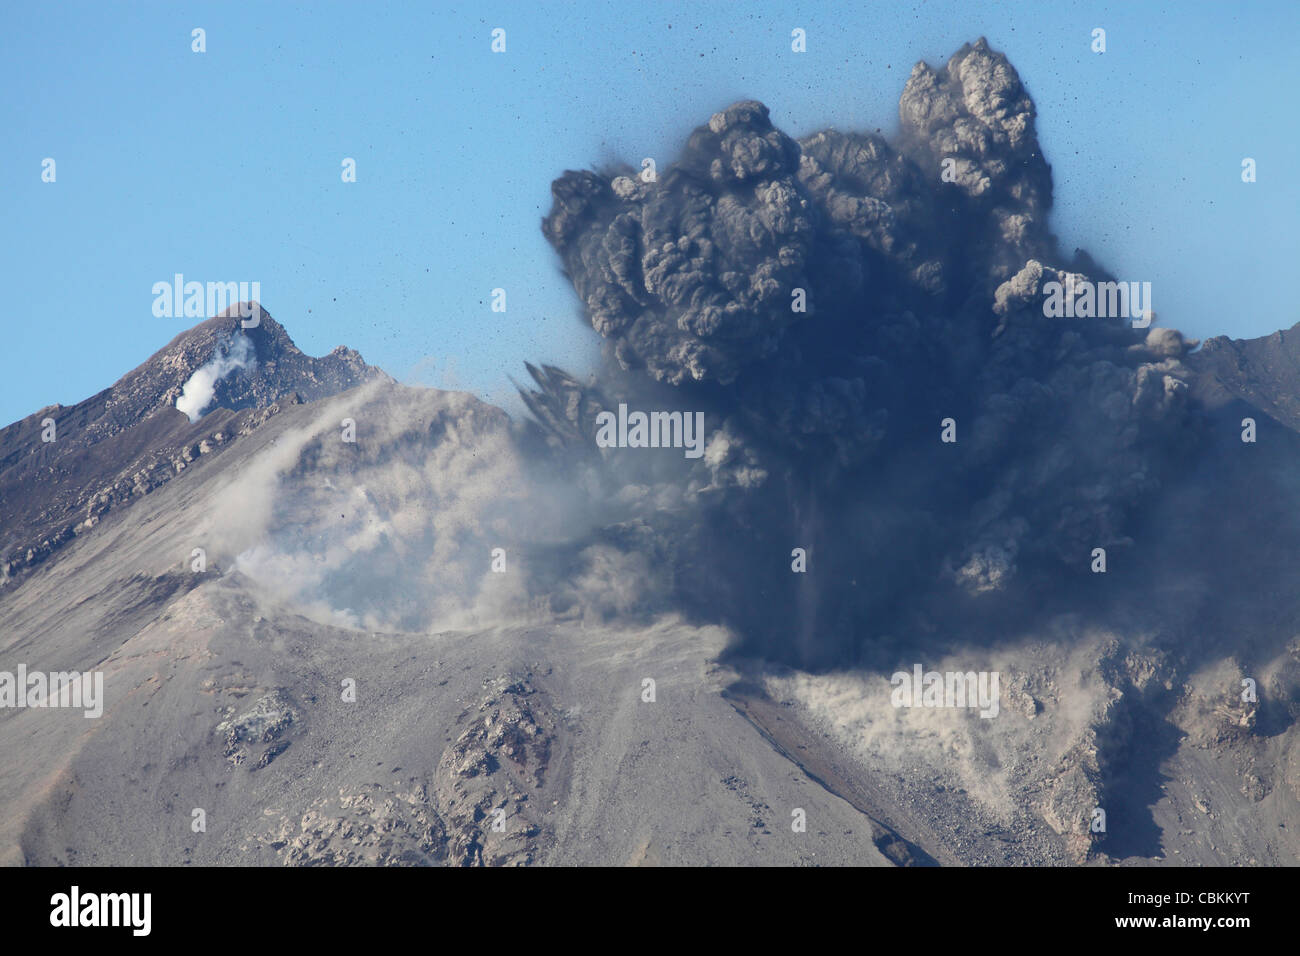 Enero 4, 2010 - nube de ceniza siguiente Vulcanian erupción explosiva, volcán Sakurajima, Japón. Foto de stock